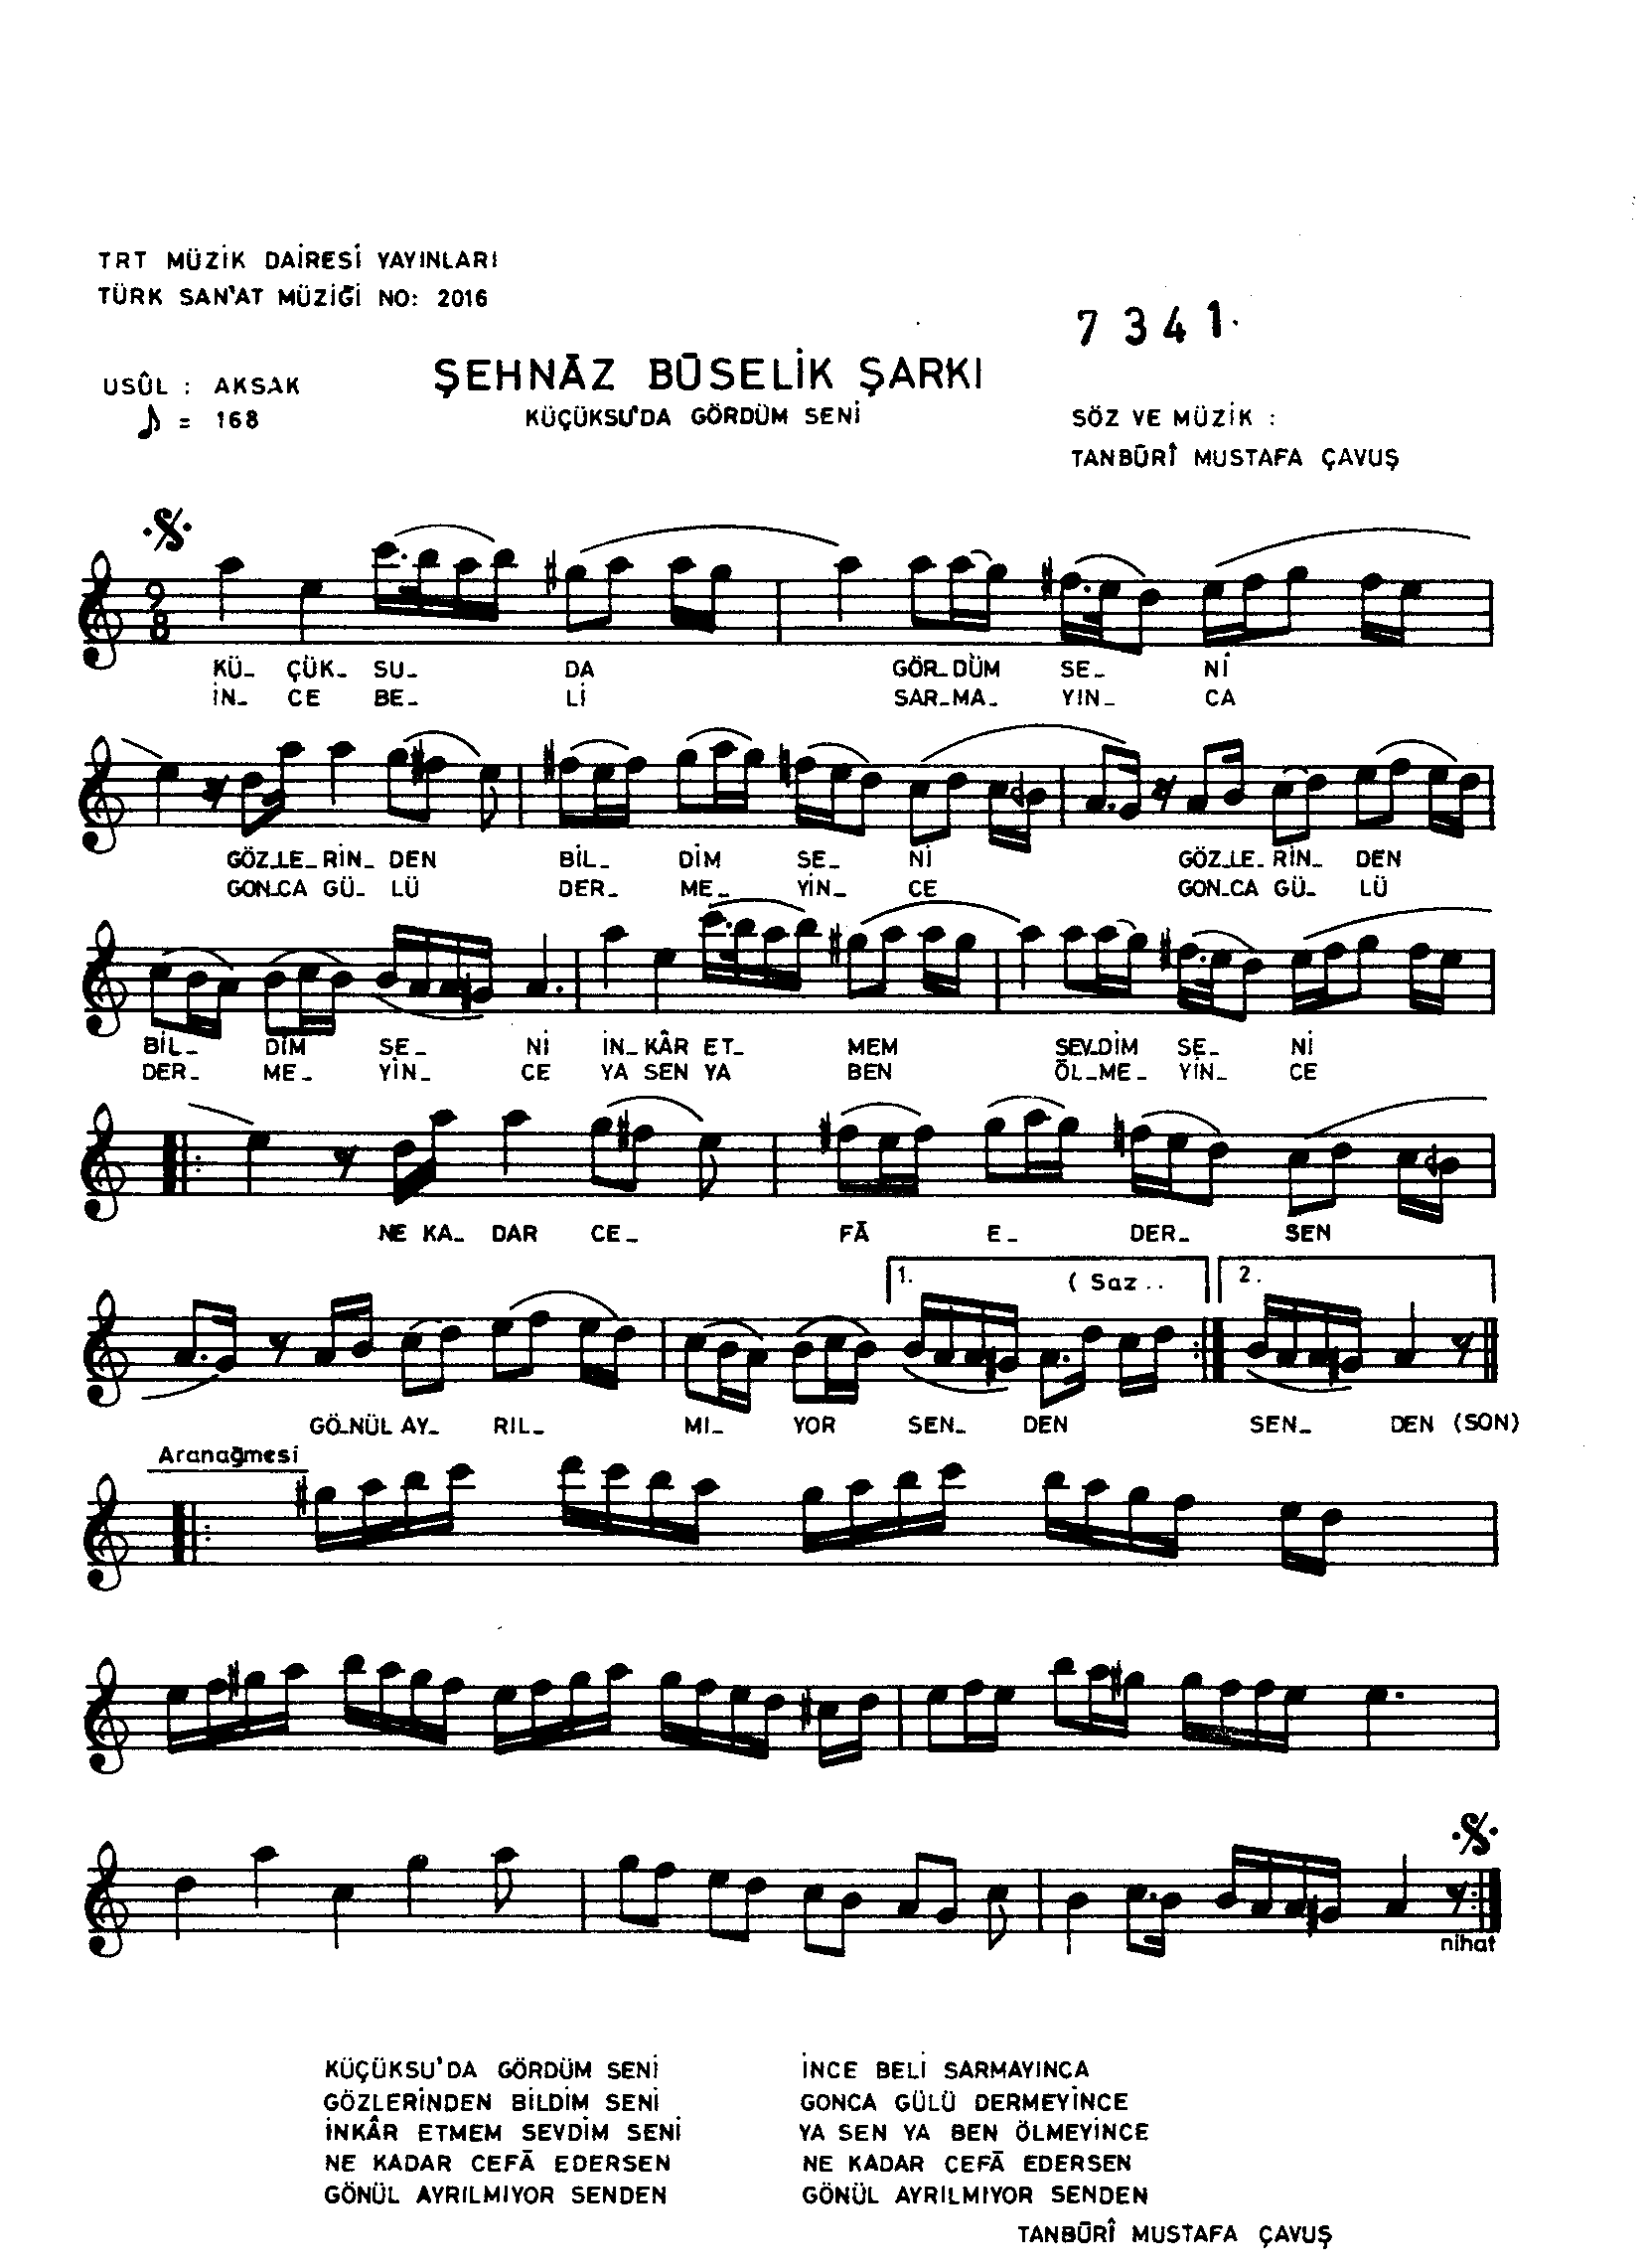 Şehnâz Bûselik - Şarkı - Tanbûri Mustafa Çavuş - Sayfa 1